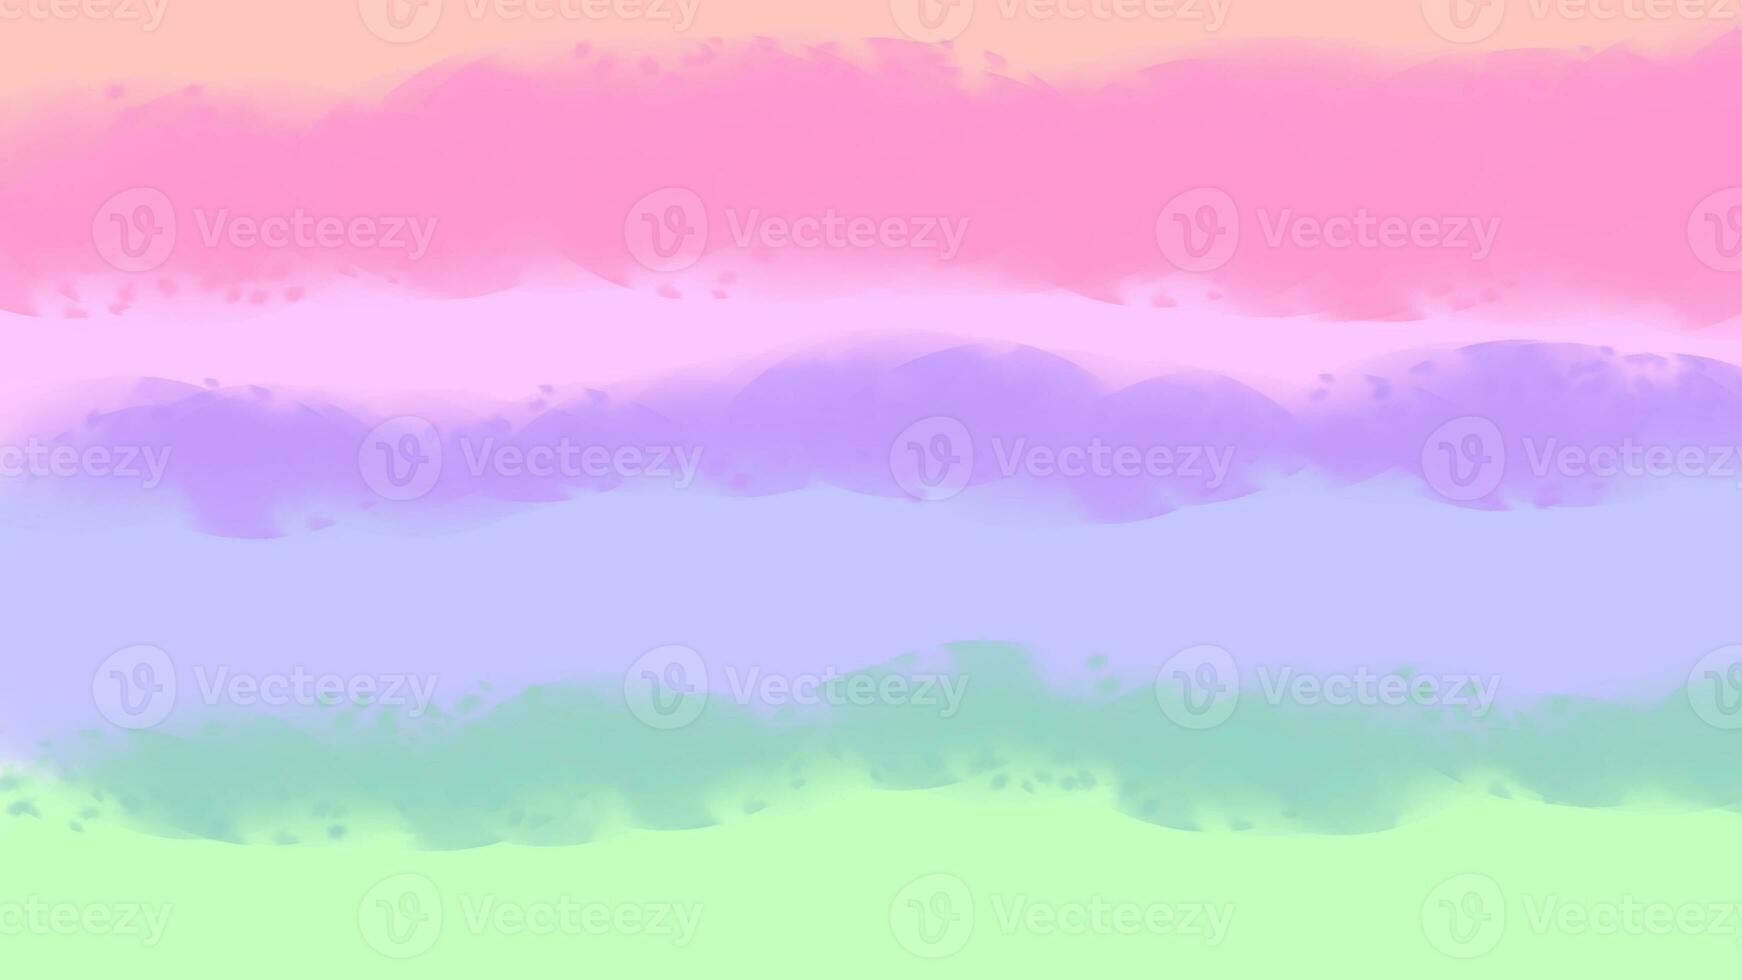 bakgrund, pastell vattenfärg bakgrund, ljus vattenfärg på en vit bakgrund, imaginär bilder, abstrakt bilder, regnbåge färger foto